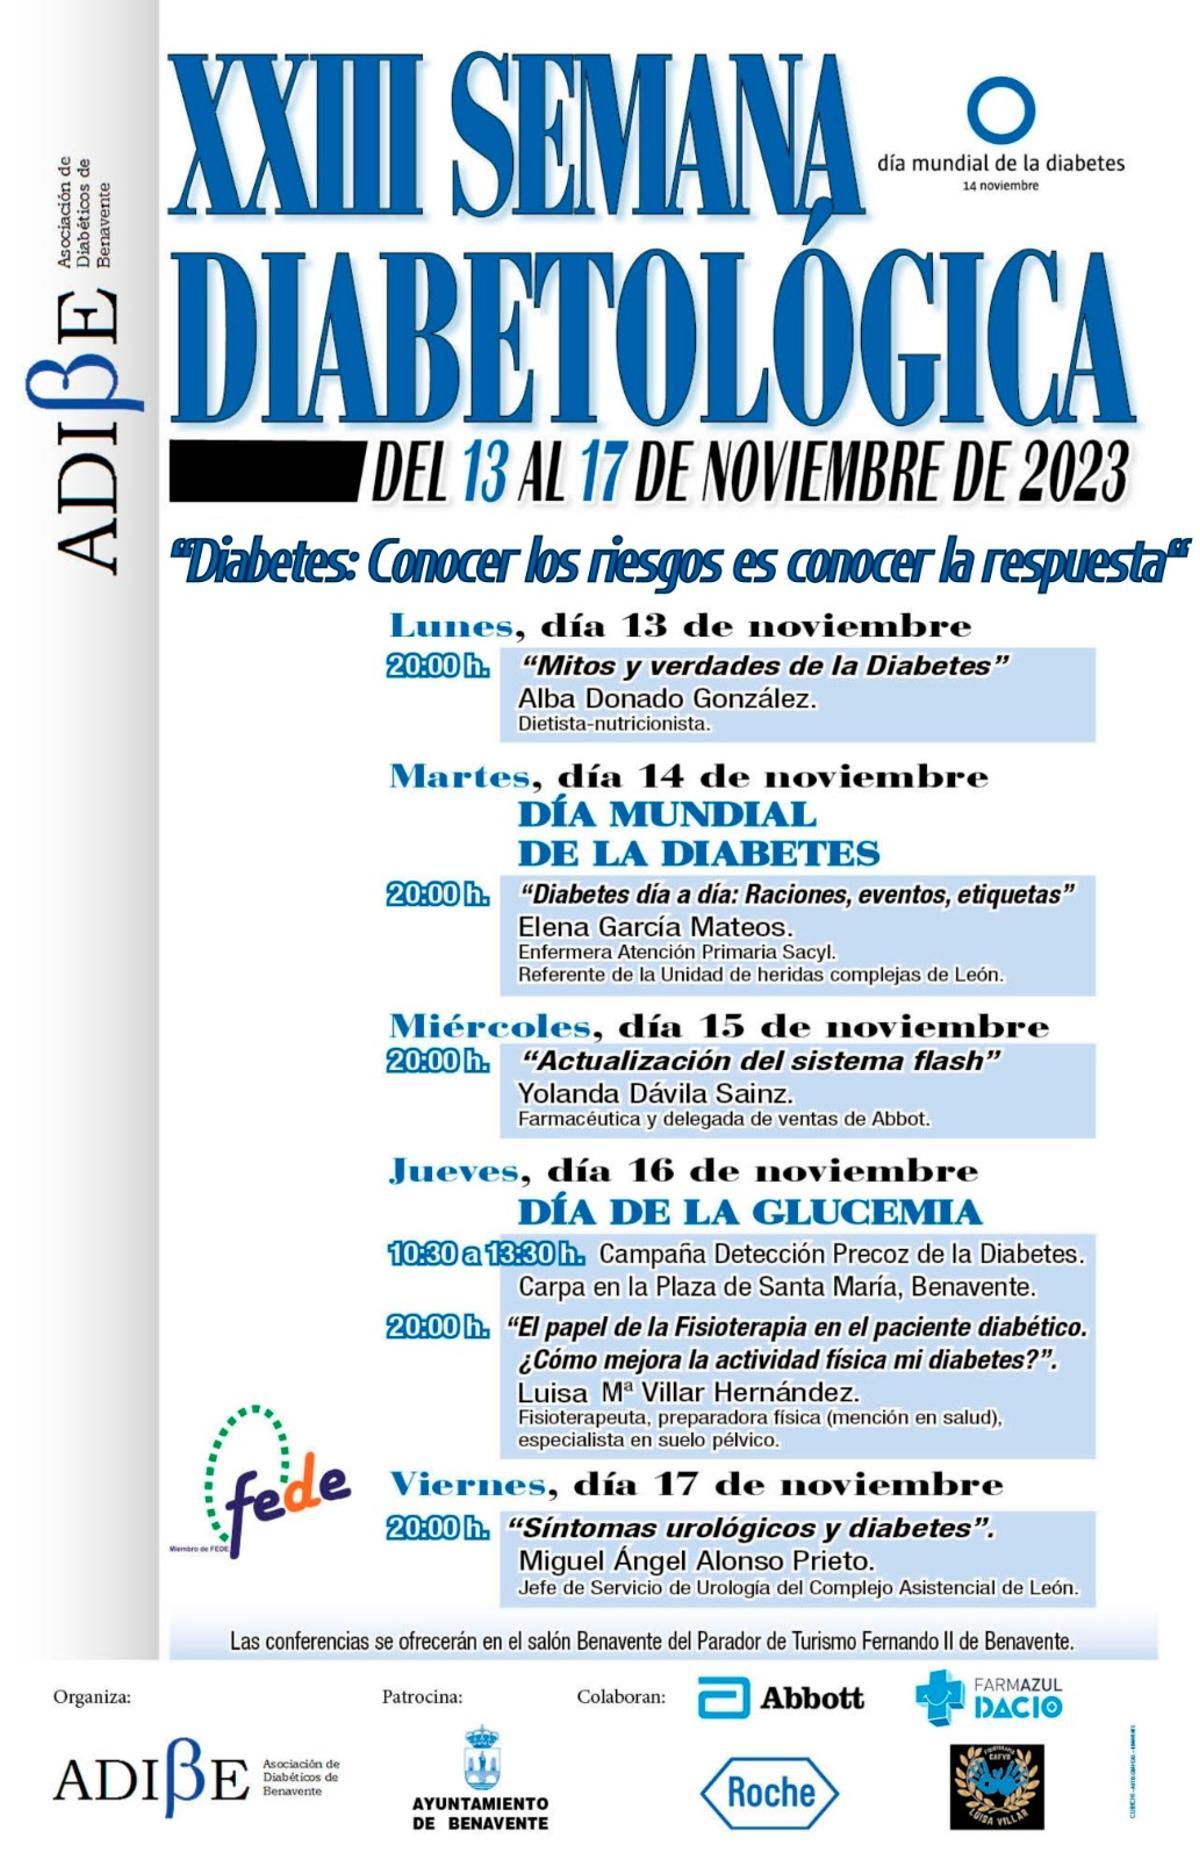 Cartel de la XXIII Semana de la Diabetes en Benavente.